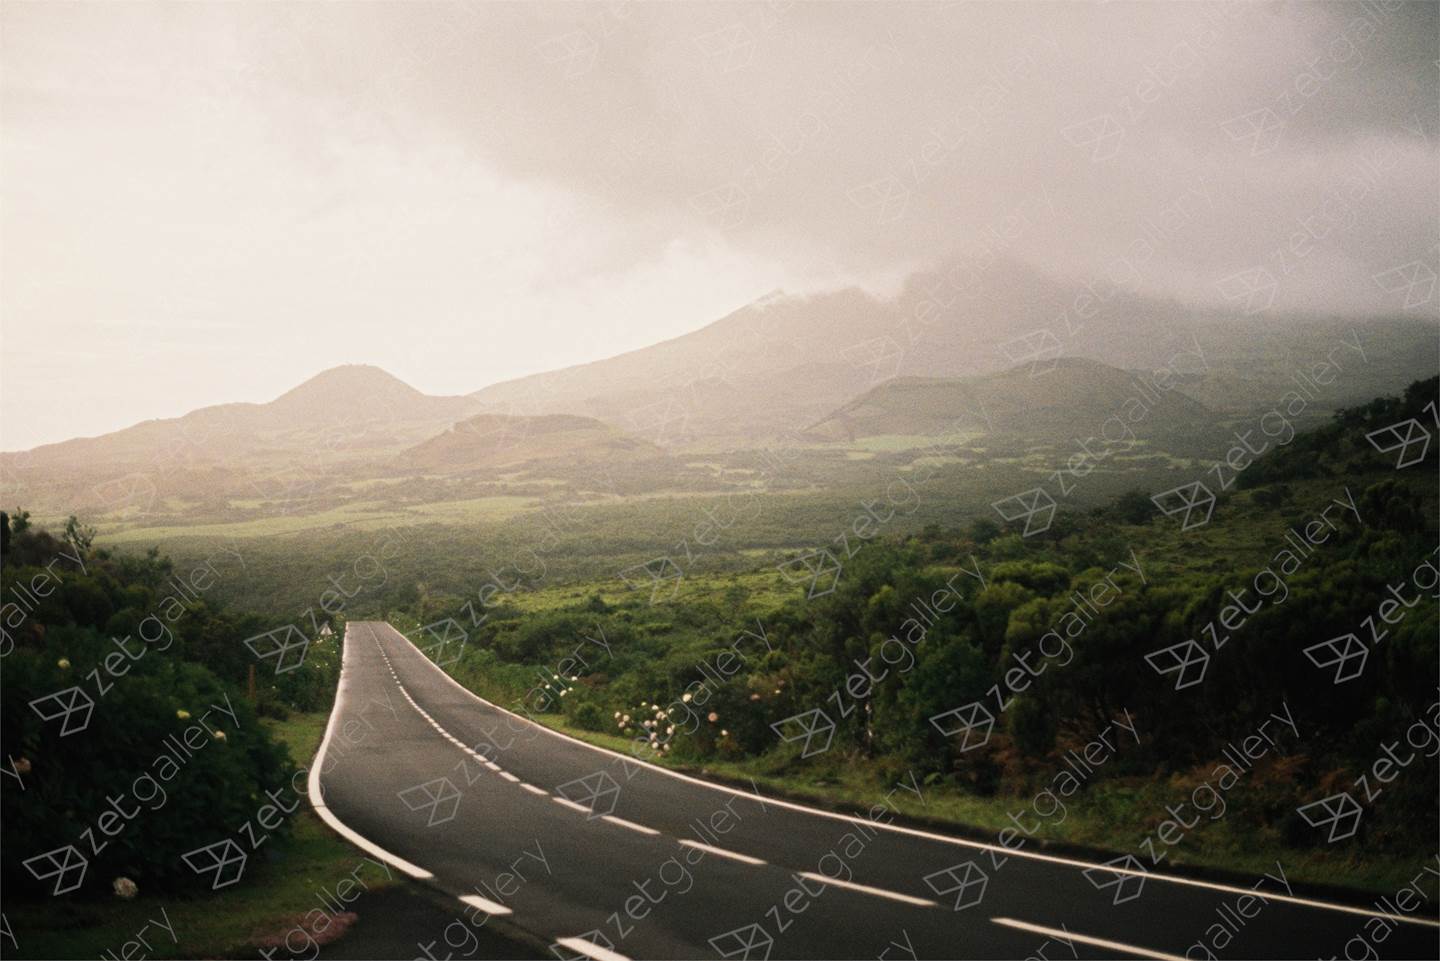 Uma estrada no meio do nada / A road in the middle of nowhere, original Paisaje Cosa análoga Fotografía de Miguel De